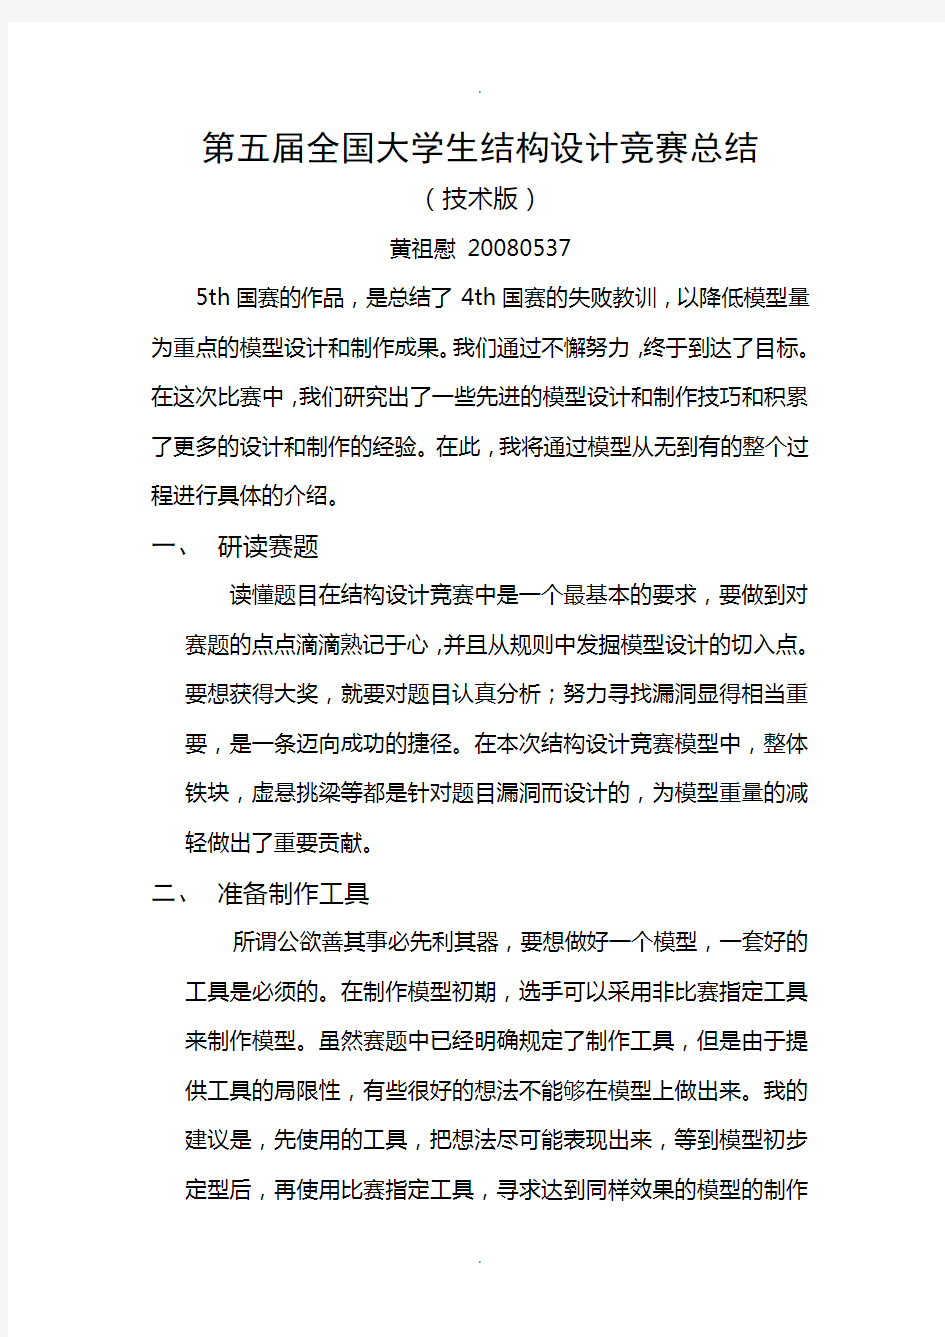 黄祖慰-第五届全国大学生结构设计竞赛总结(技术版)